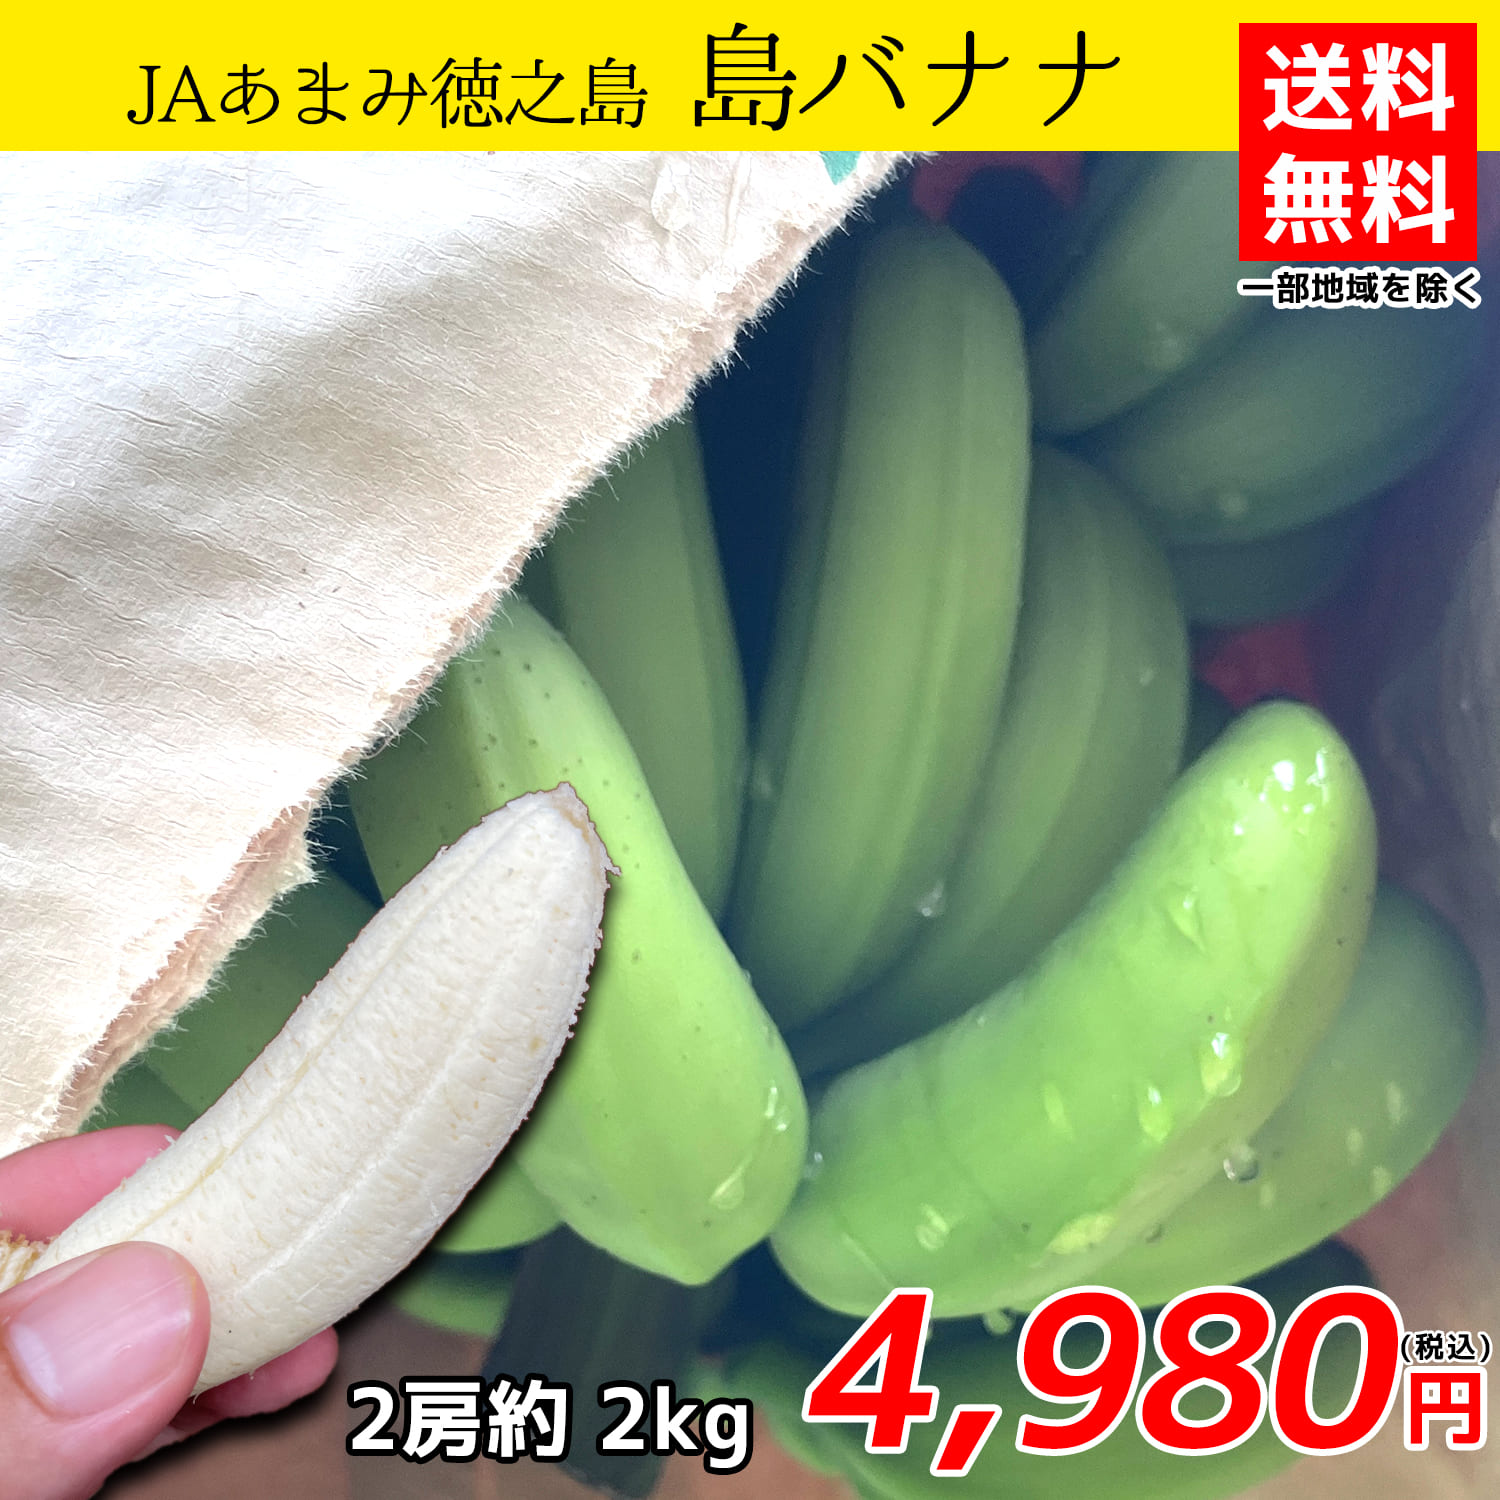 数量は多 甘さの後に襲ってくるのはフルーティーさ JAあまみ徳之島 島バナナ 初回限定 送料無料